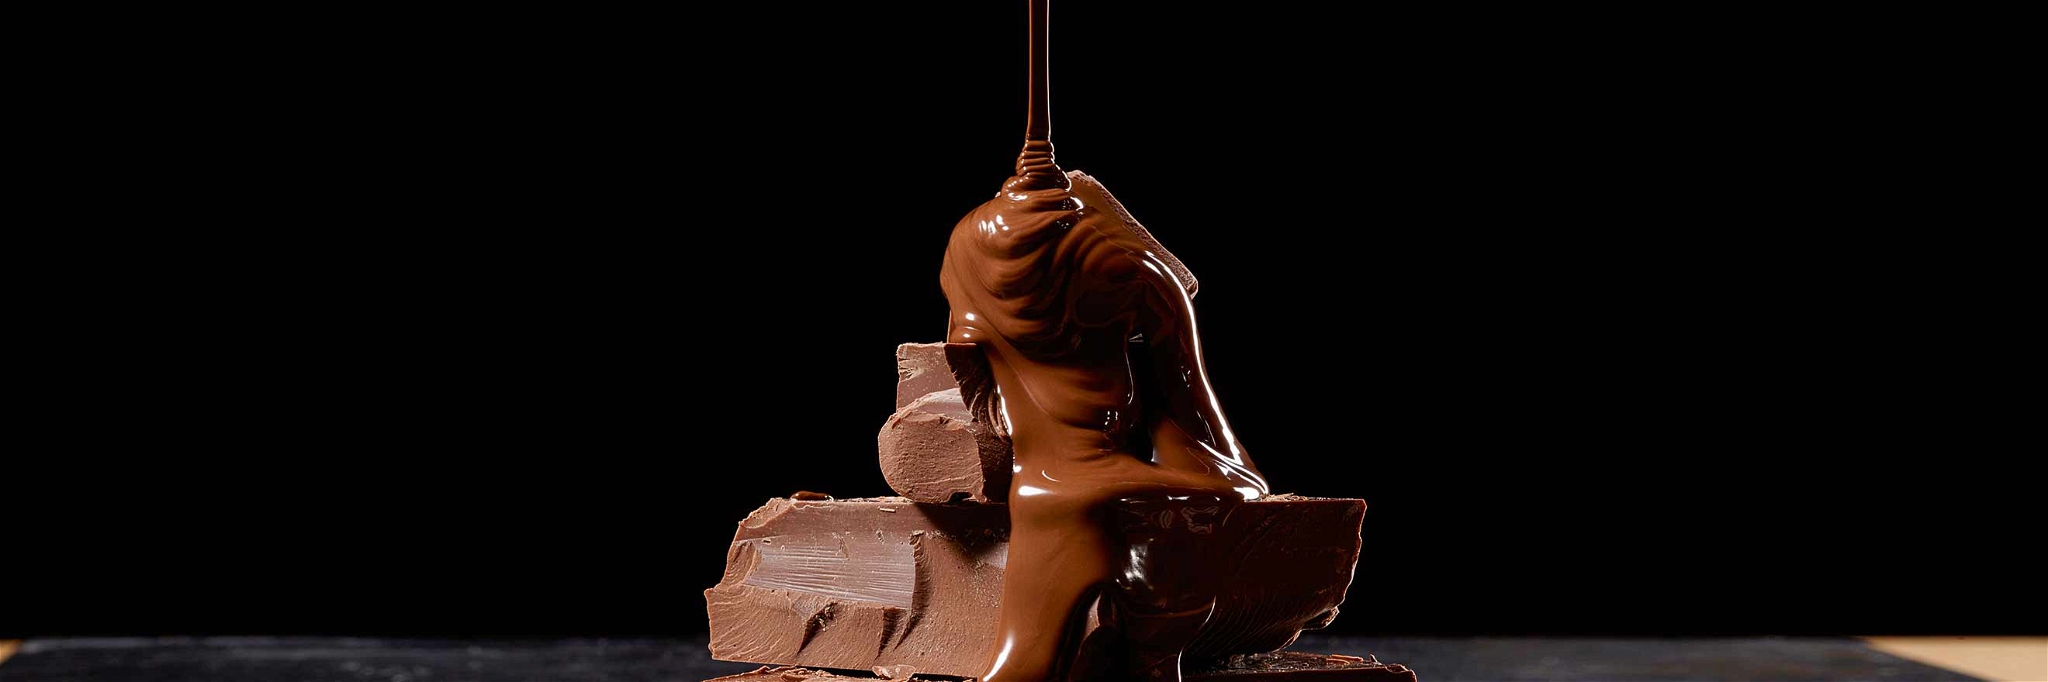 Der Genuss von Schokolade ist eine der schönsten Arten, sich zu verwöhnen.